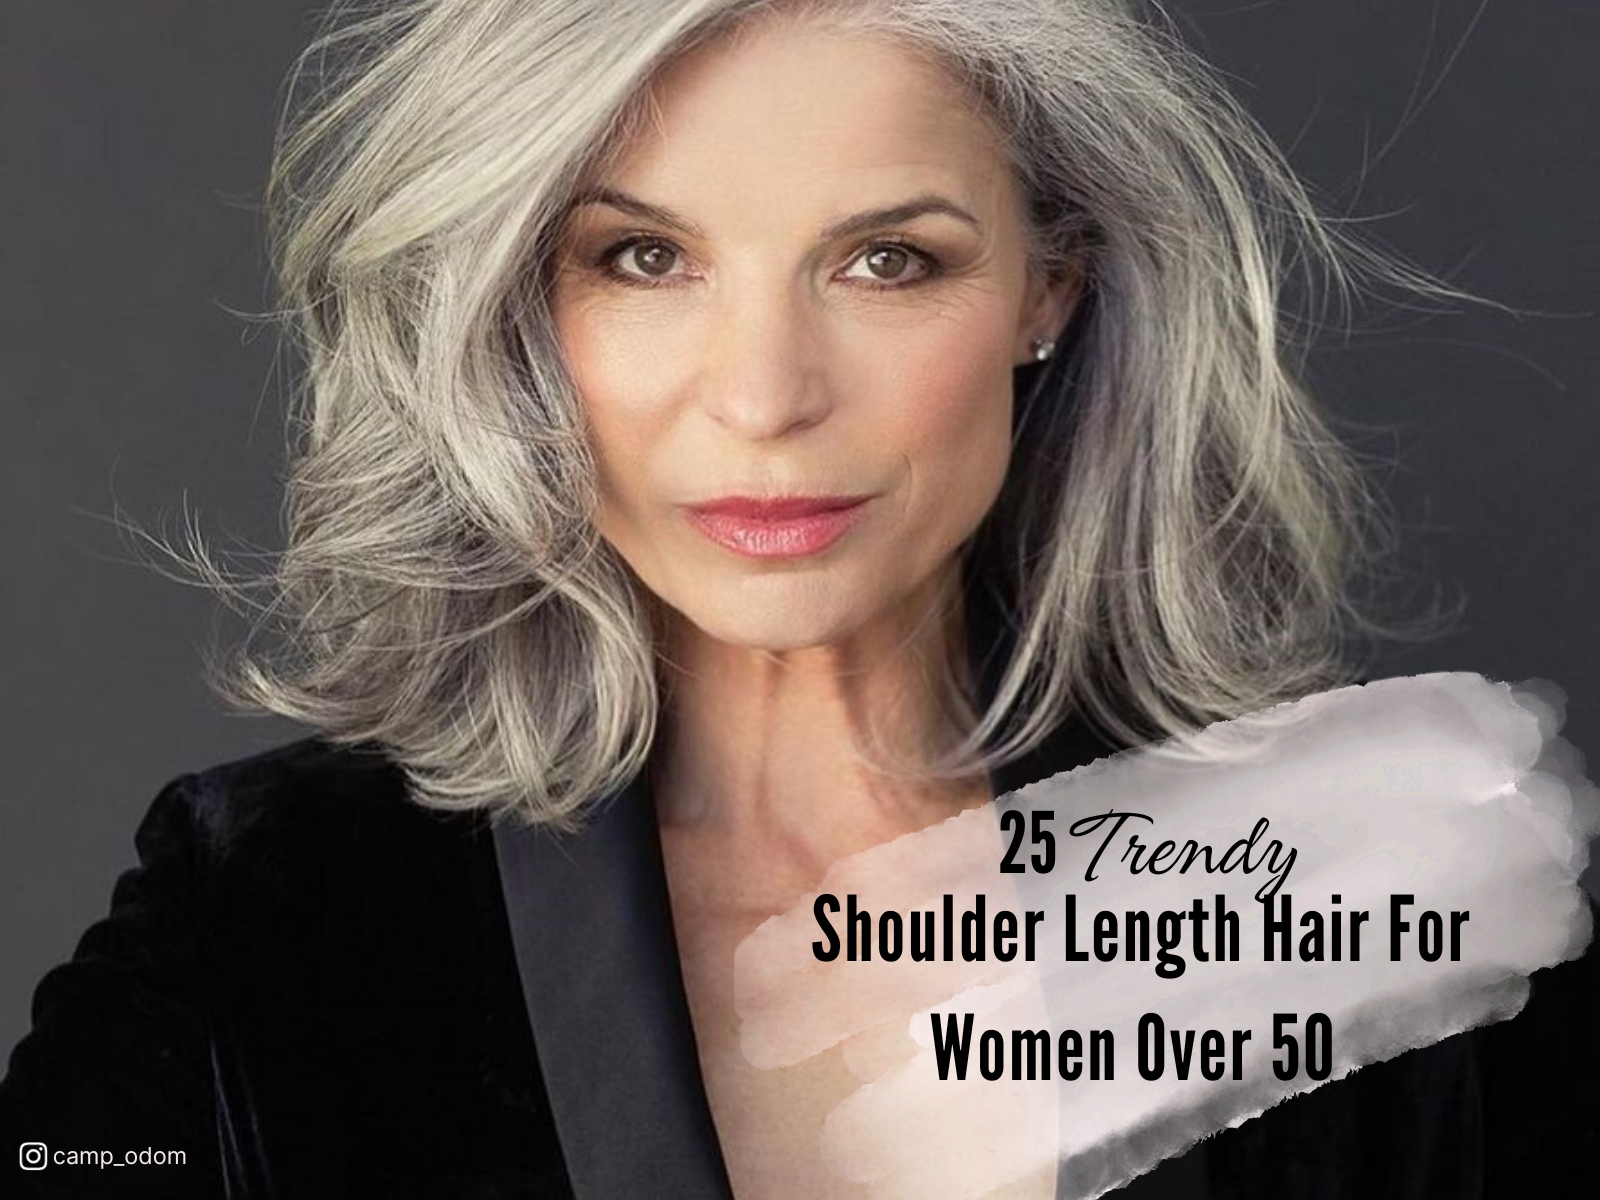 Shoulder Length Hair For Women Over 50